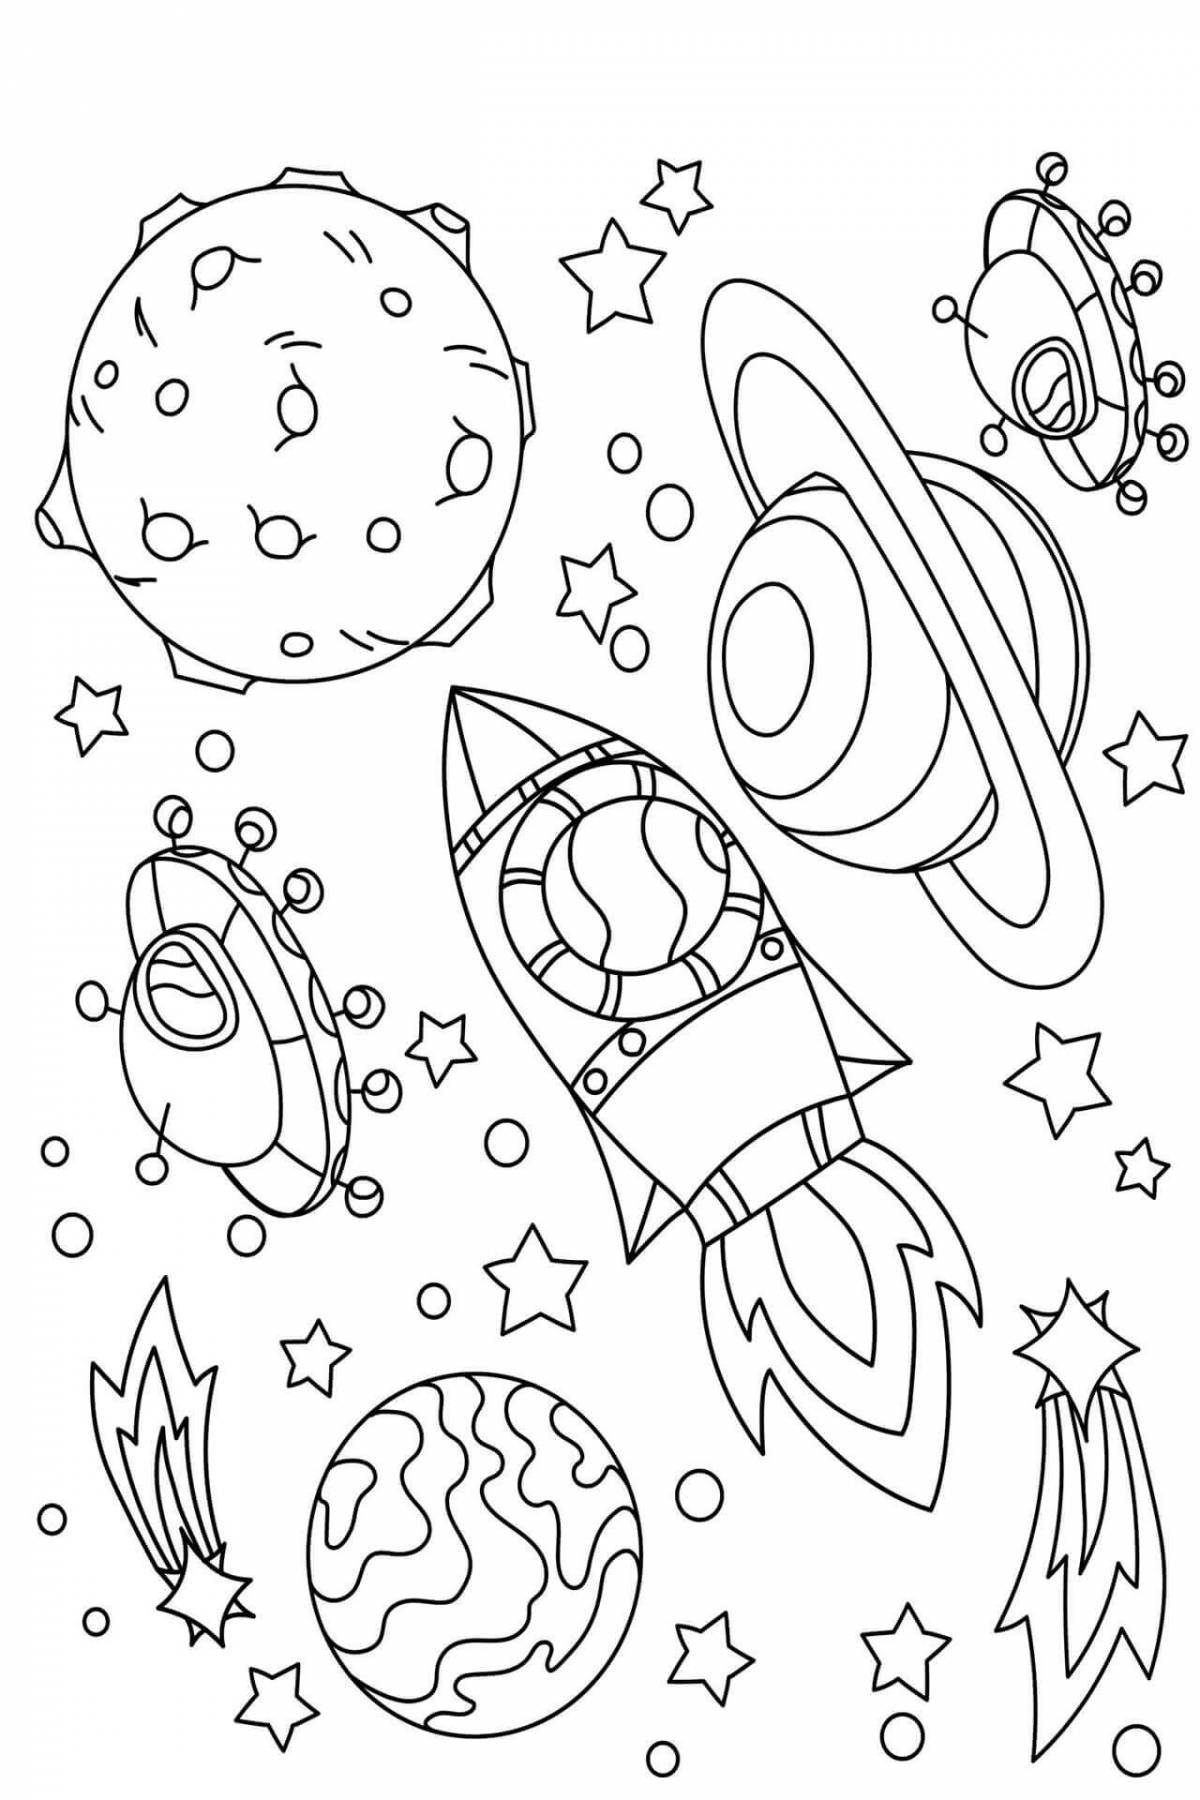 Раскраска космос 3 4 года. Космос раскраска для детей. Раскраска космос для детей 6-7 лет. Раскраска. В космосе. Раскраски космос для детей 4-5 лет.